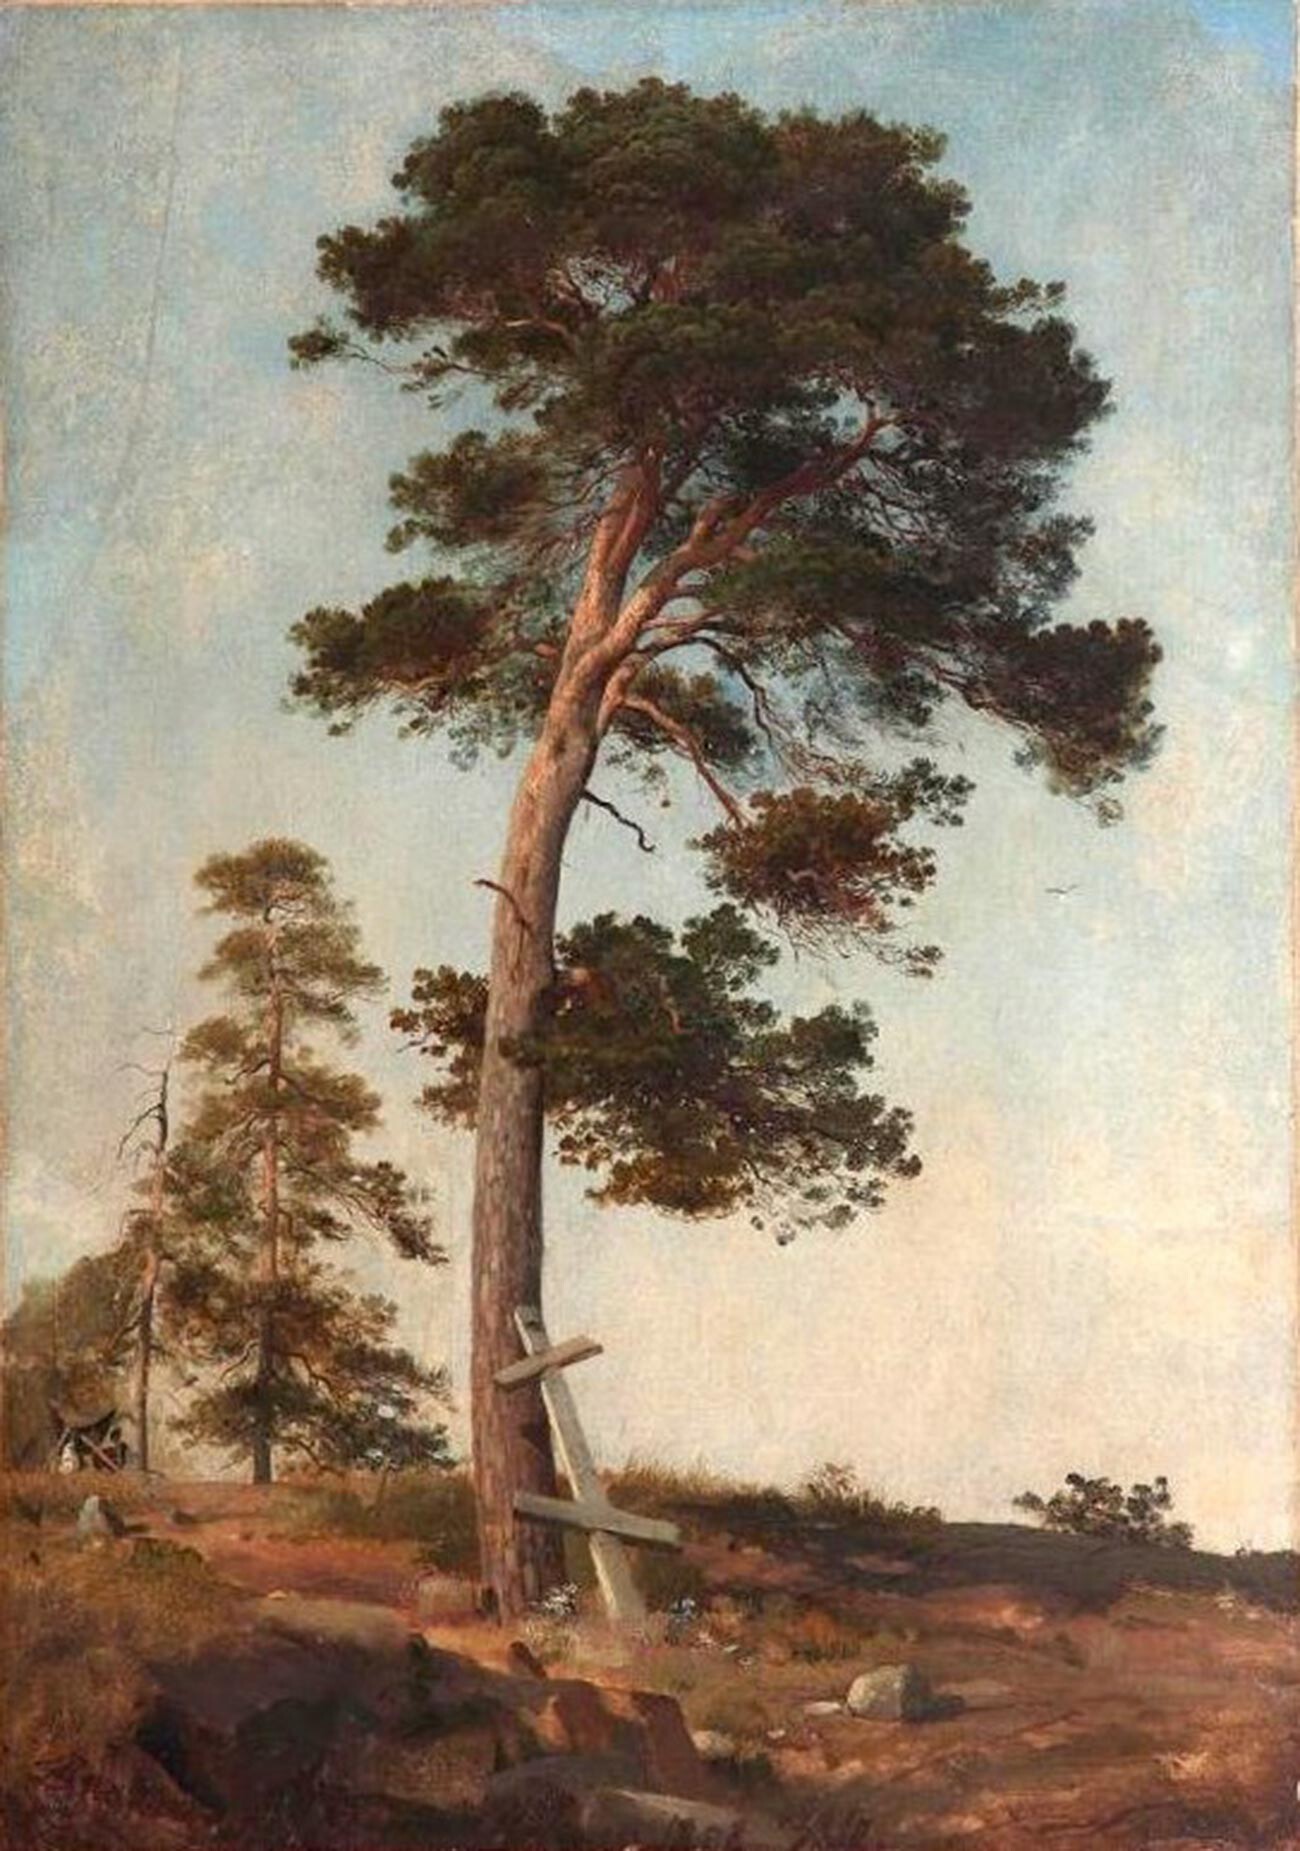 イワン・シーシキン、『ヴァルラームの松』、1858年